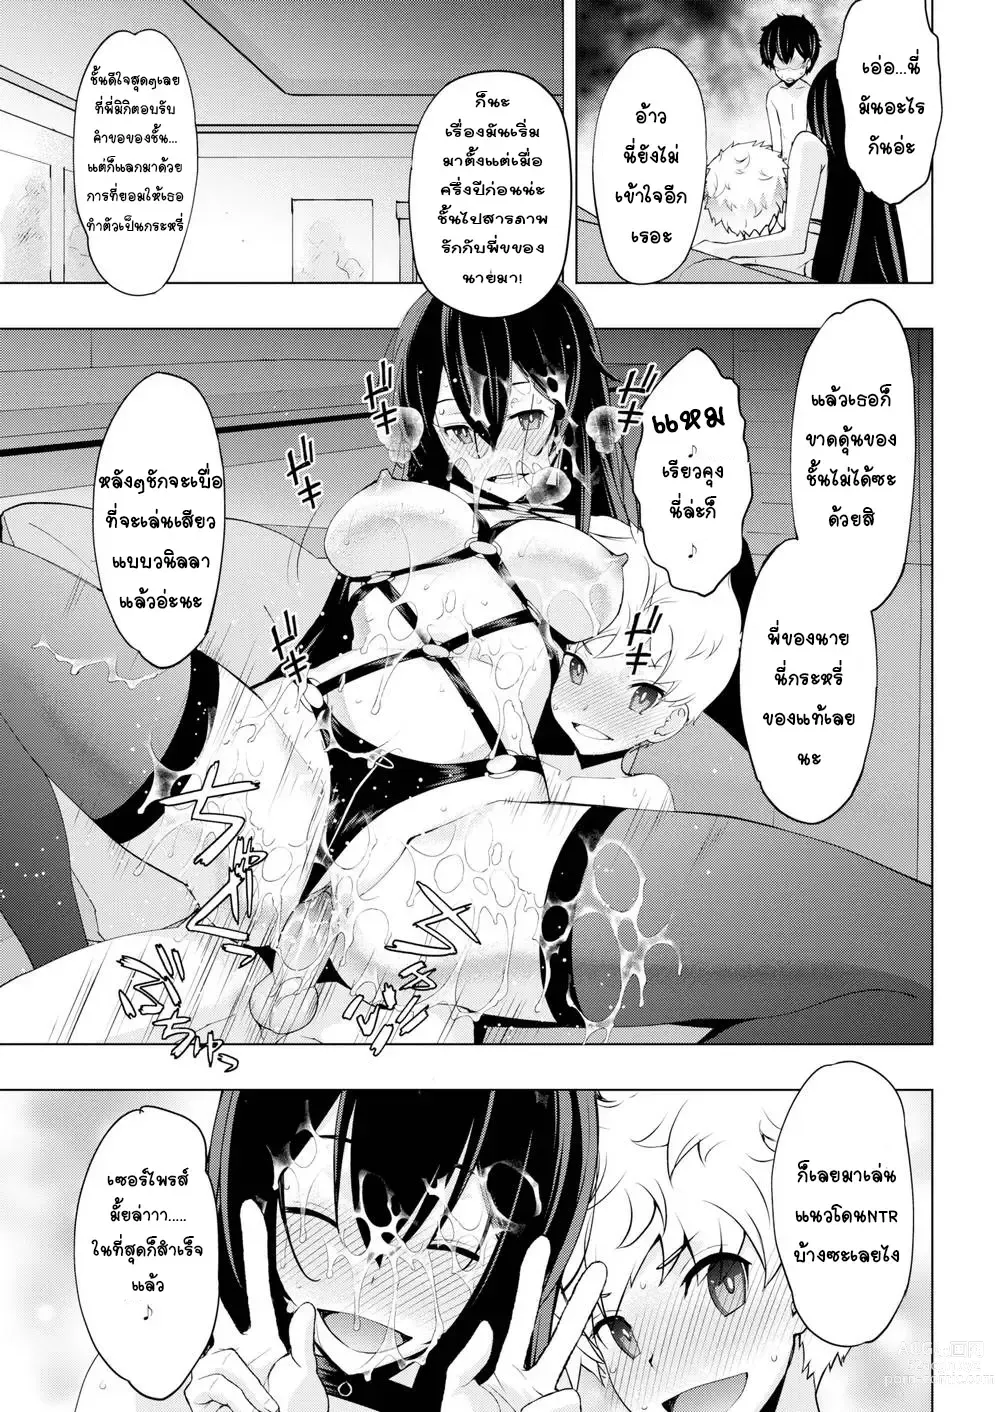 Page 15 of manga Sis x Me